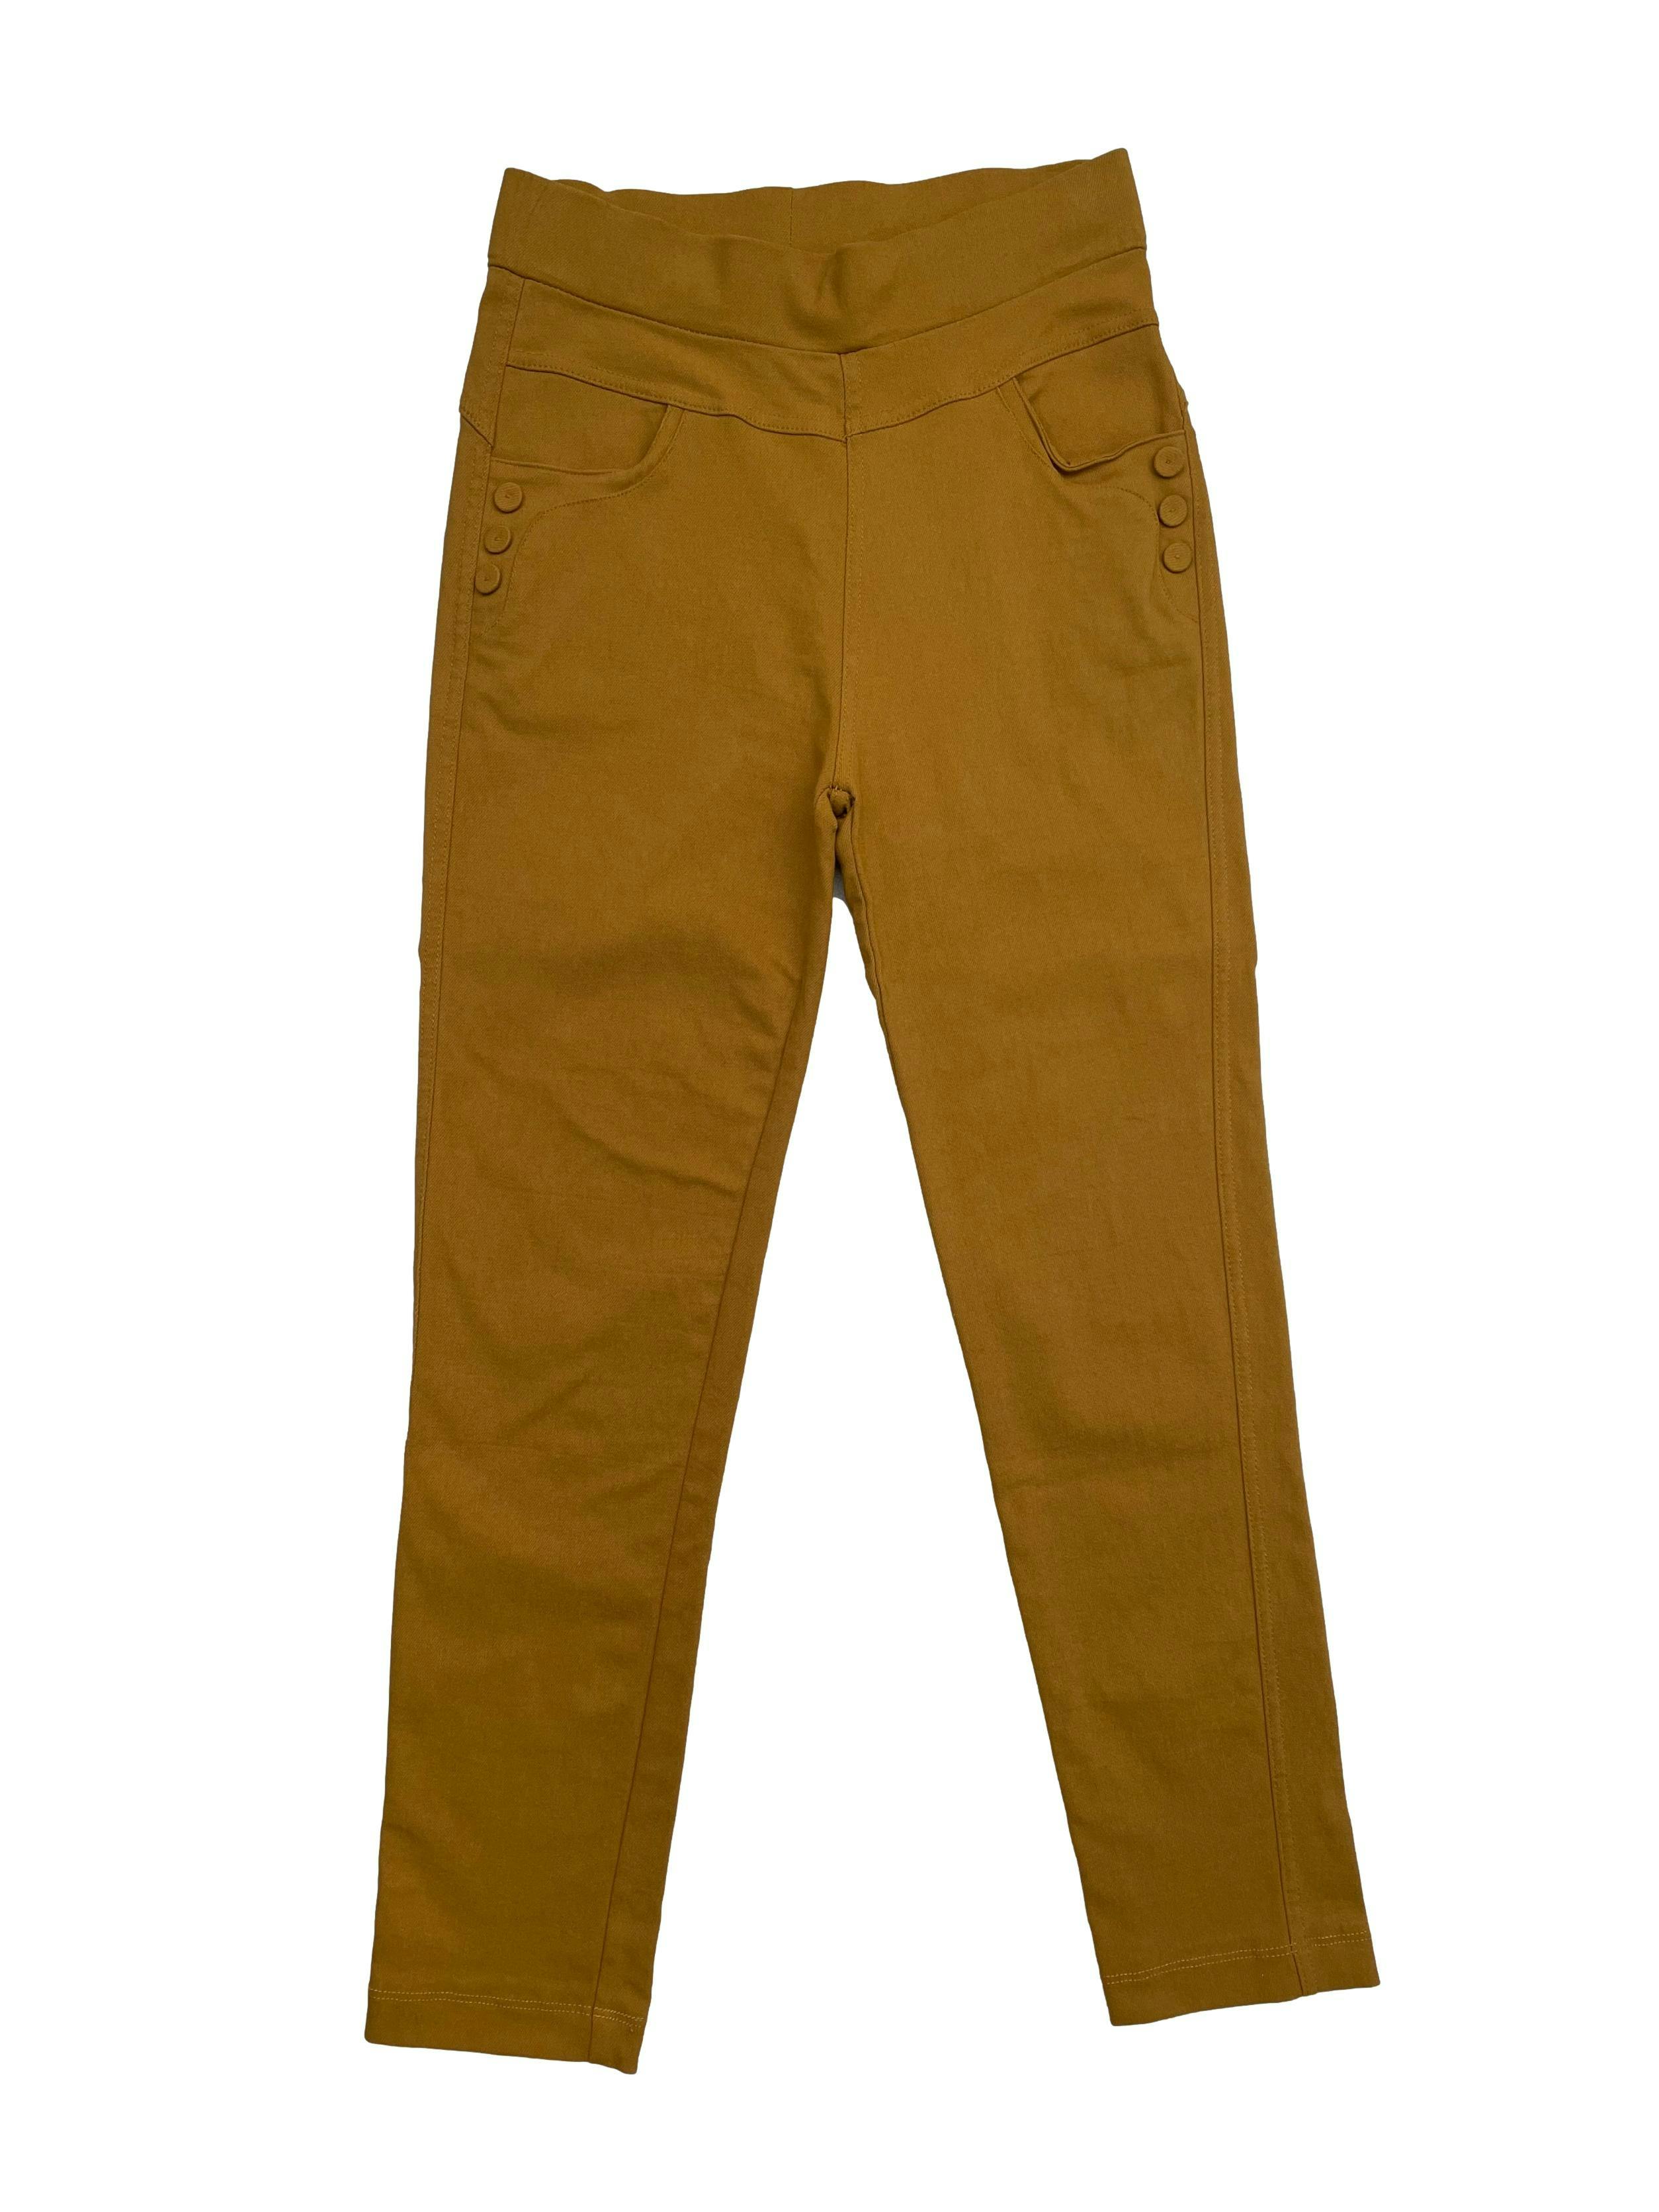 Pantalón skinny stretch color mostaza con bolsillos y pinzas posteriores. Cintura 64cm sin estirar, Largo 85cm.